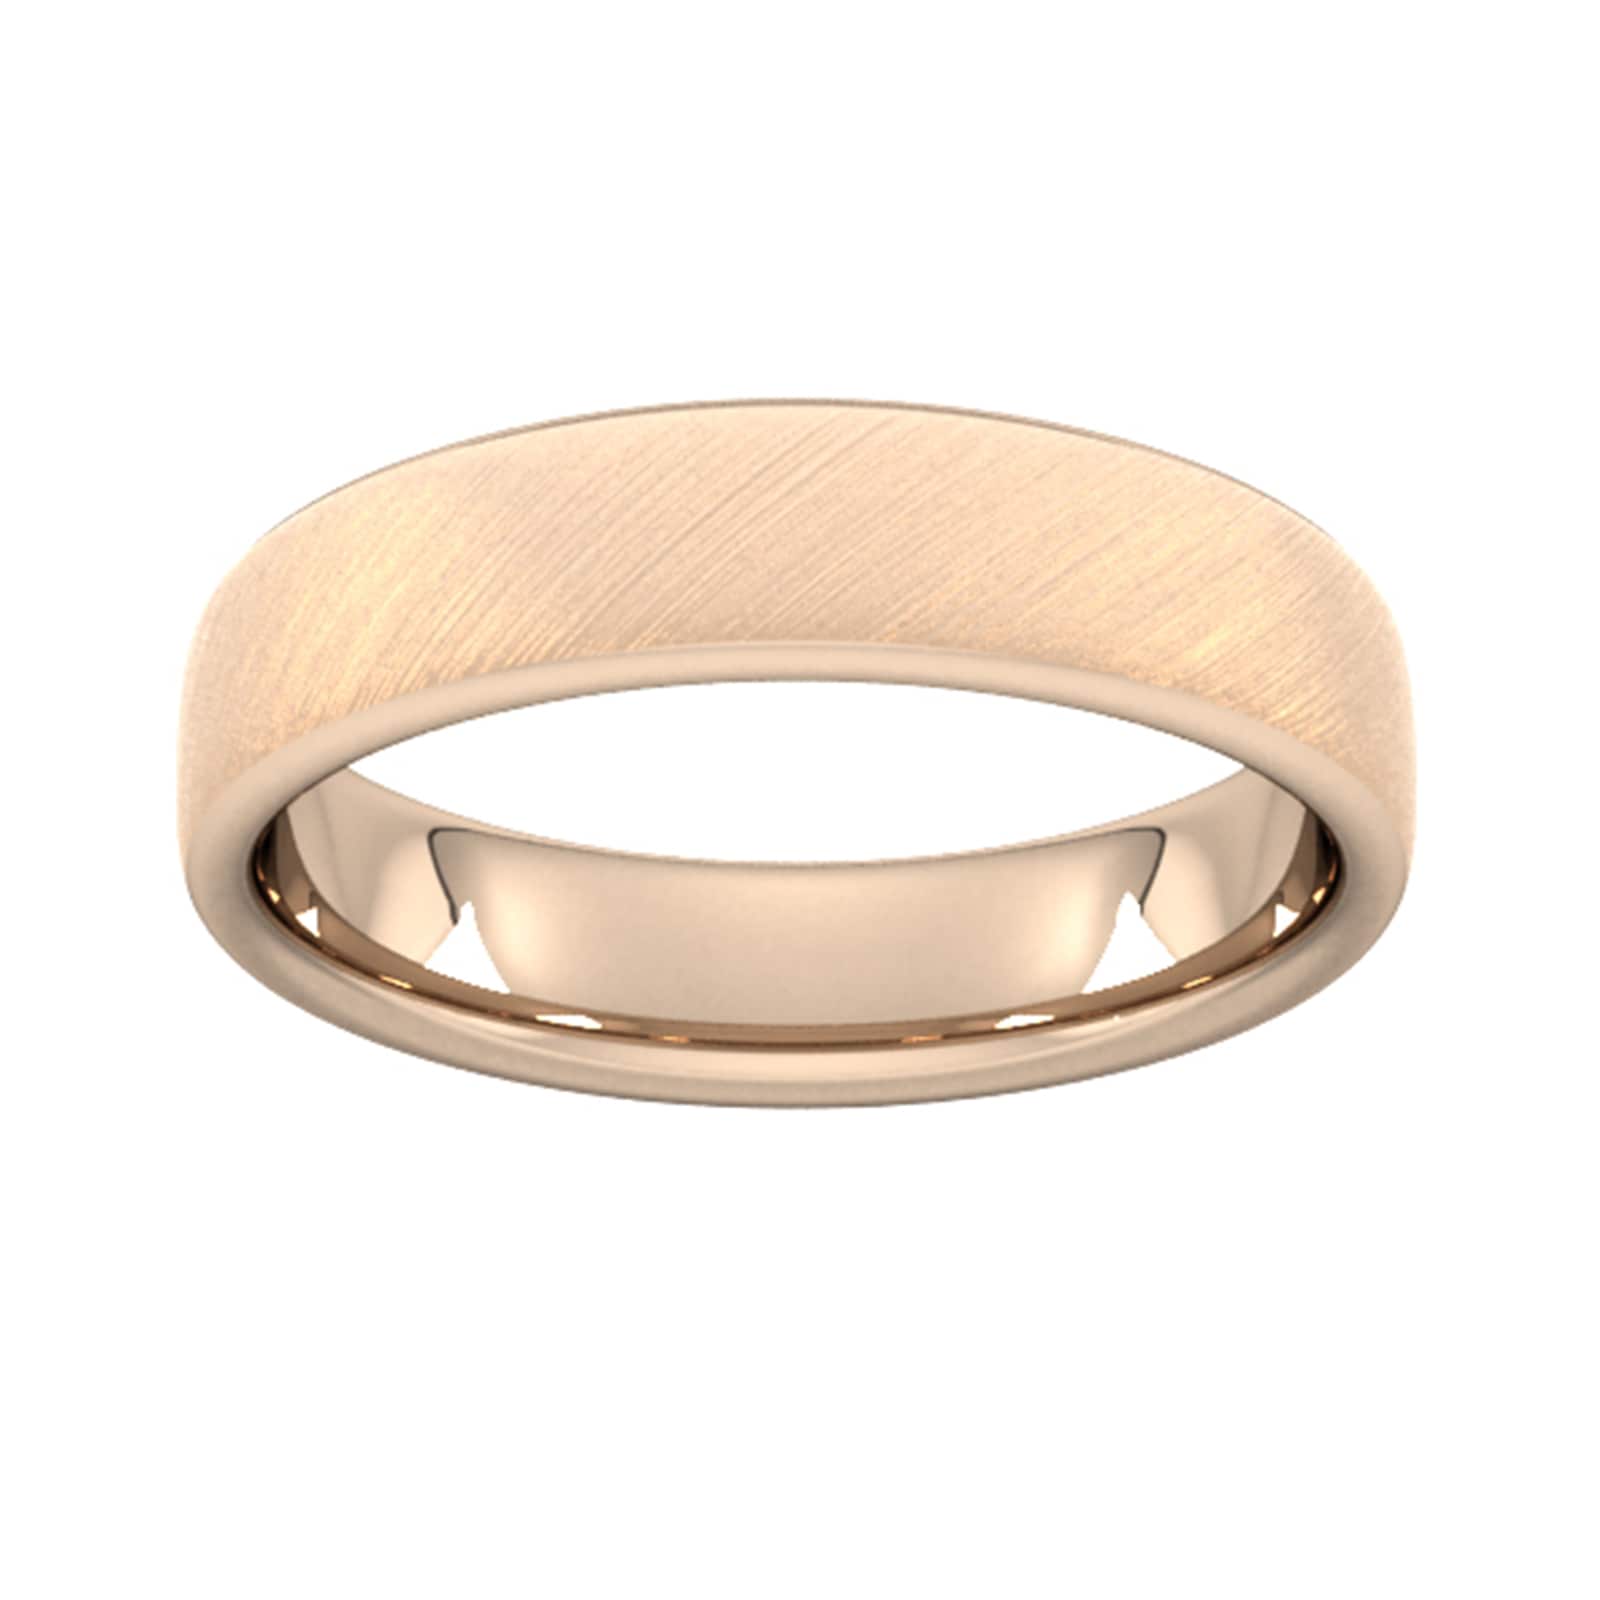 5mm Slight Court Extra Heavy Diagonal Matt Finish Wedding Ring In 9 Carat Rose Gold - Ring Size U